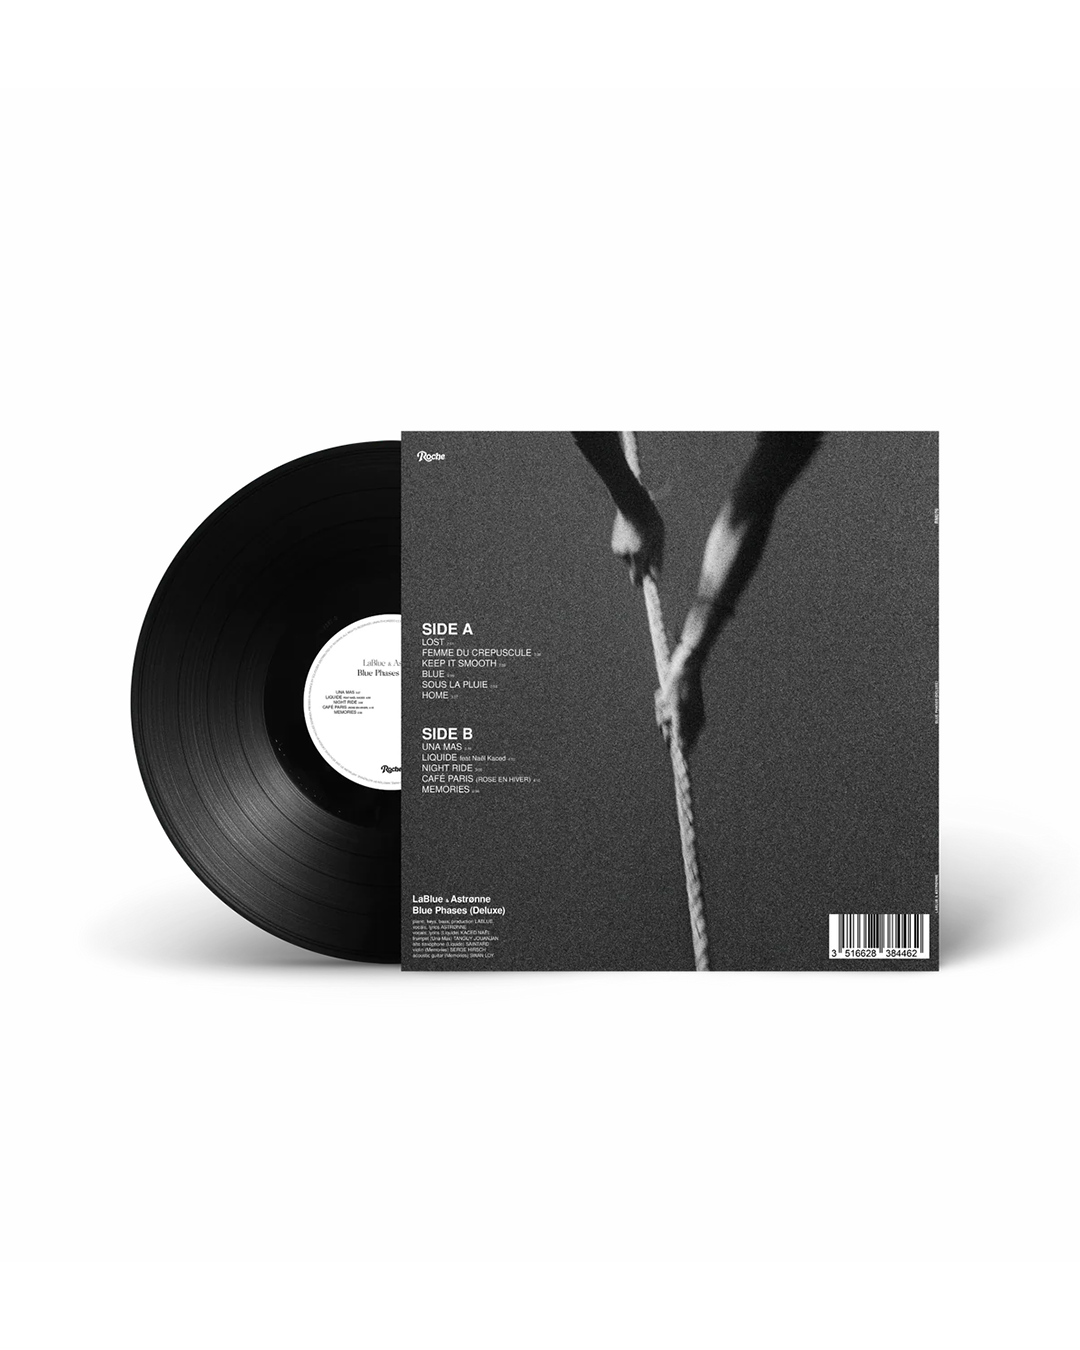 LABLUE & ASTRØNNE - BLUE PHASES (Deluxe) - VINYL 12"